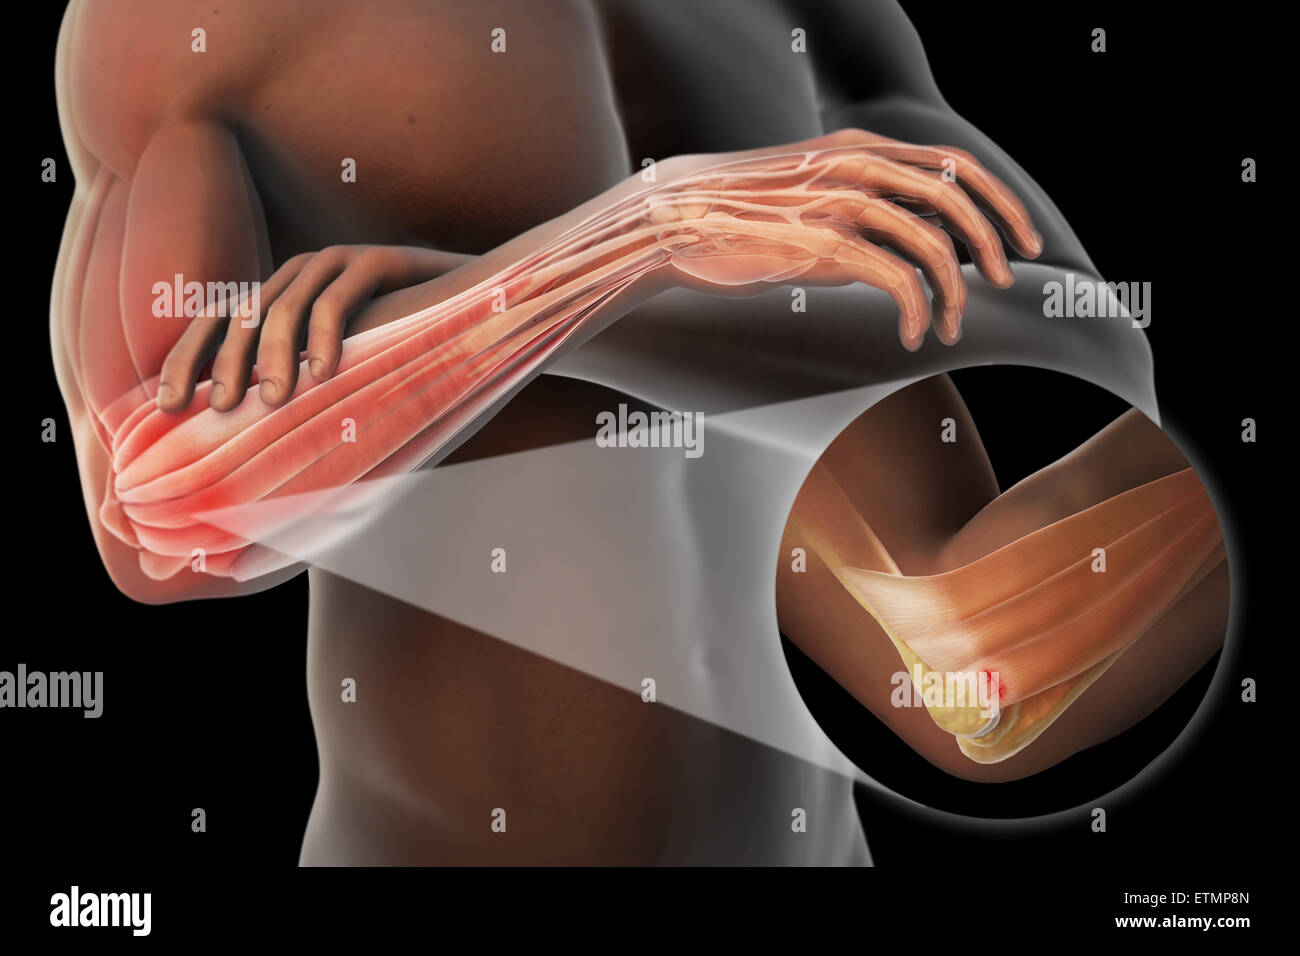 Illustrazione del braccio con la pelle trasparente per mostrare lesioni al laterale tendine epicondyle, noto come epicondilite laterale o il gomito del tennista. Foto Stock